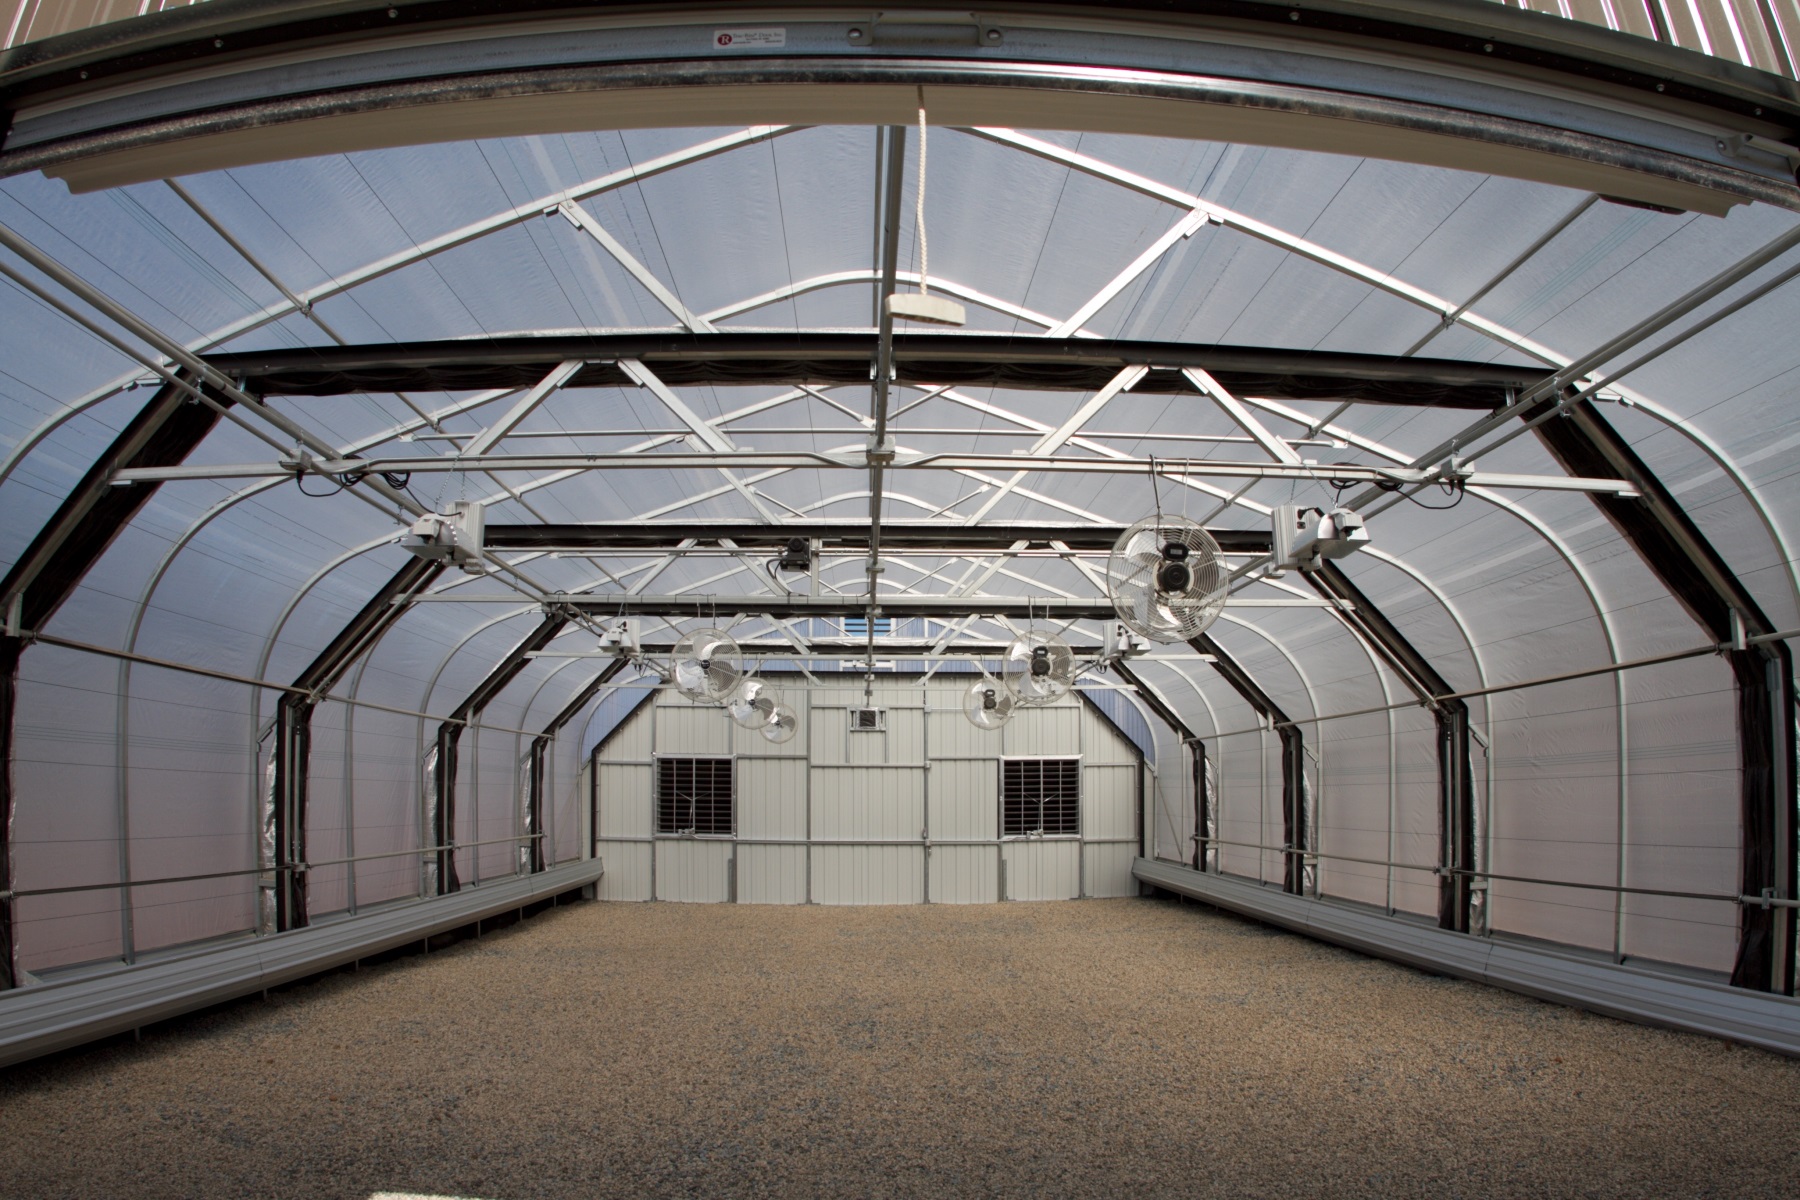 Der Vorteil des Lichtentzugs Gewächshaus丨AX Greenhouse ist auf die Planung und den Bau von Gewächshäusern spezialisiert